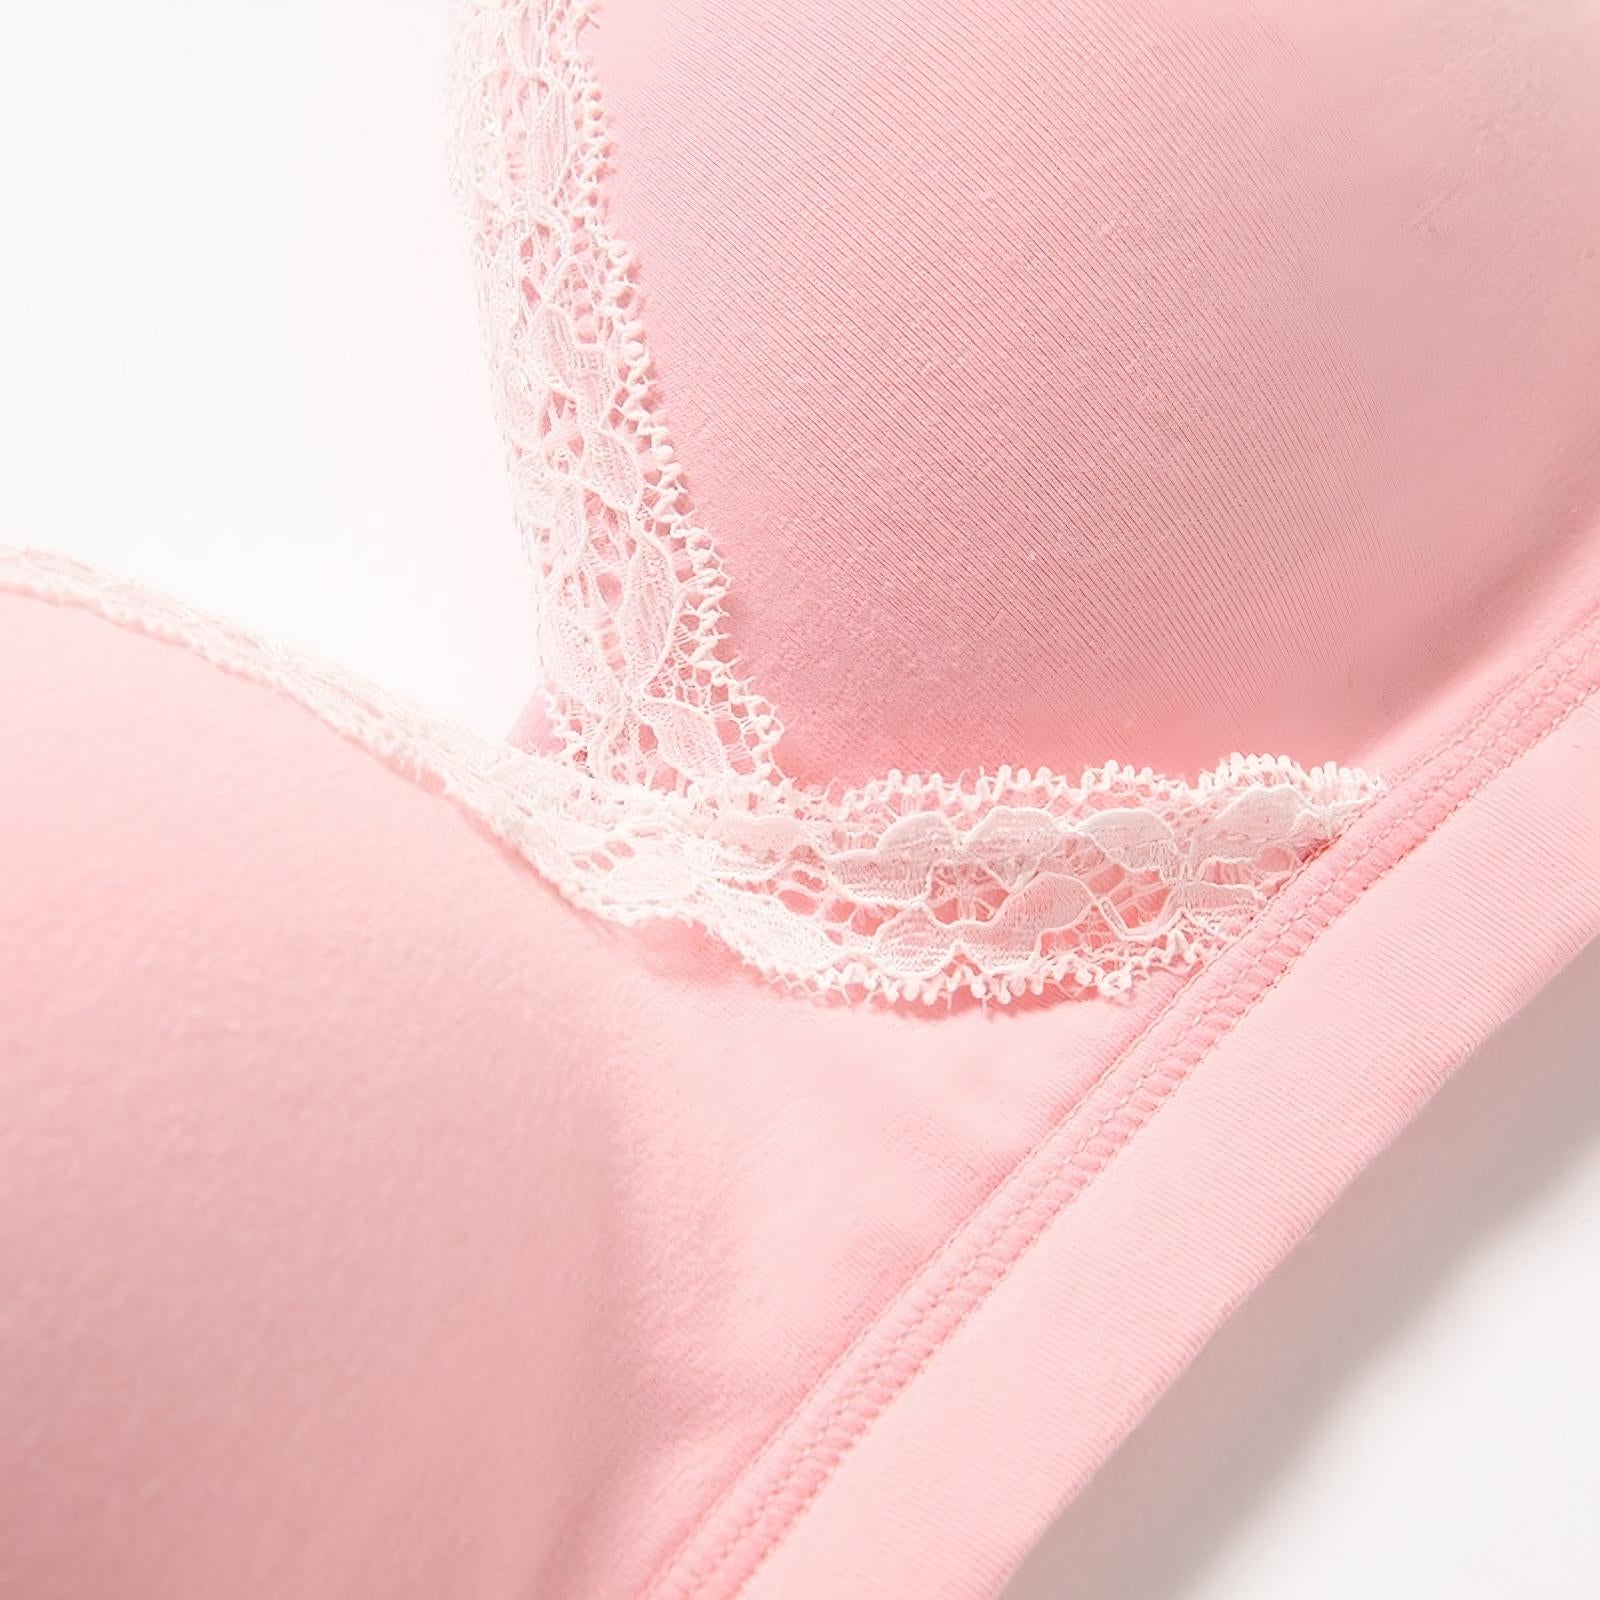 Momifies nursing bra details